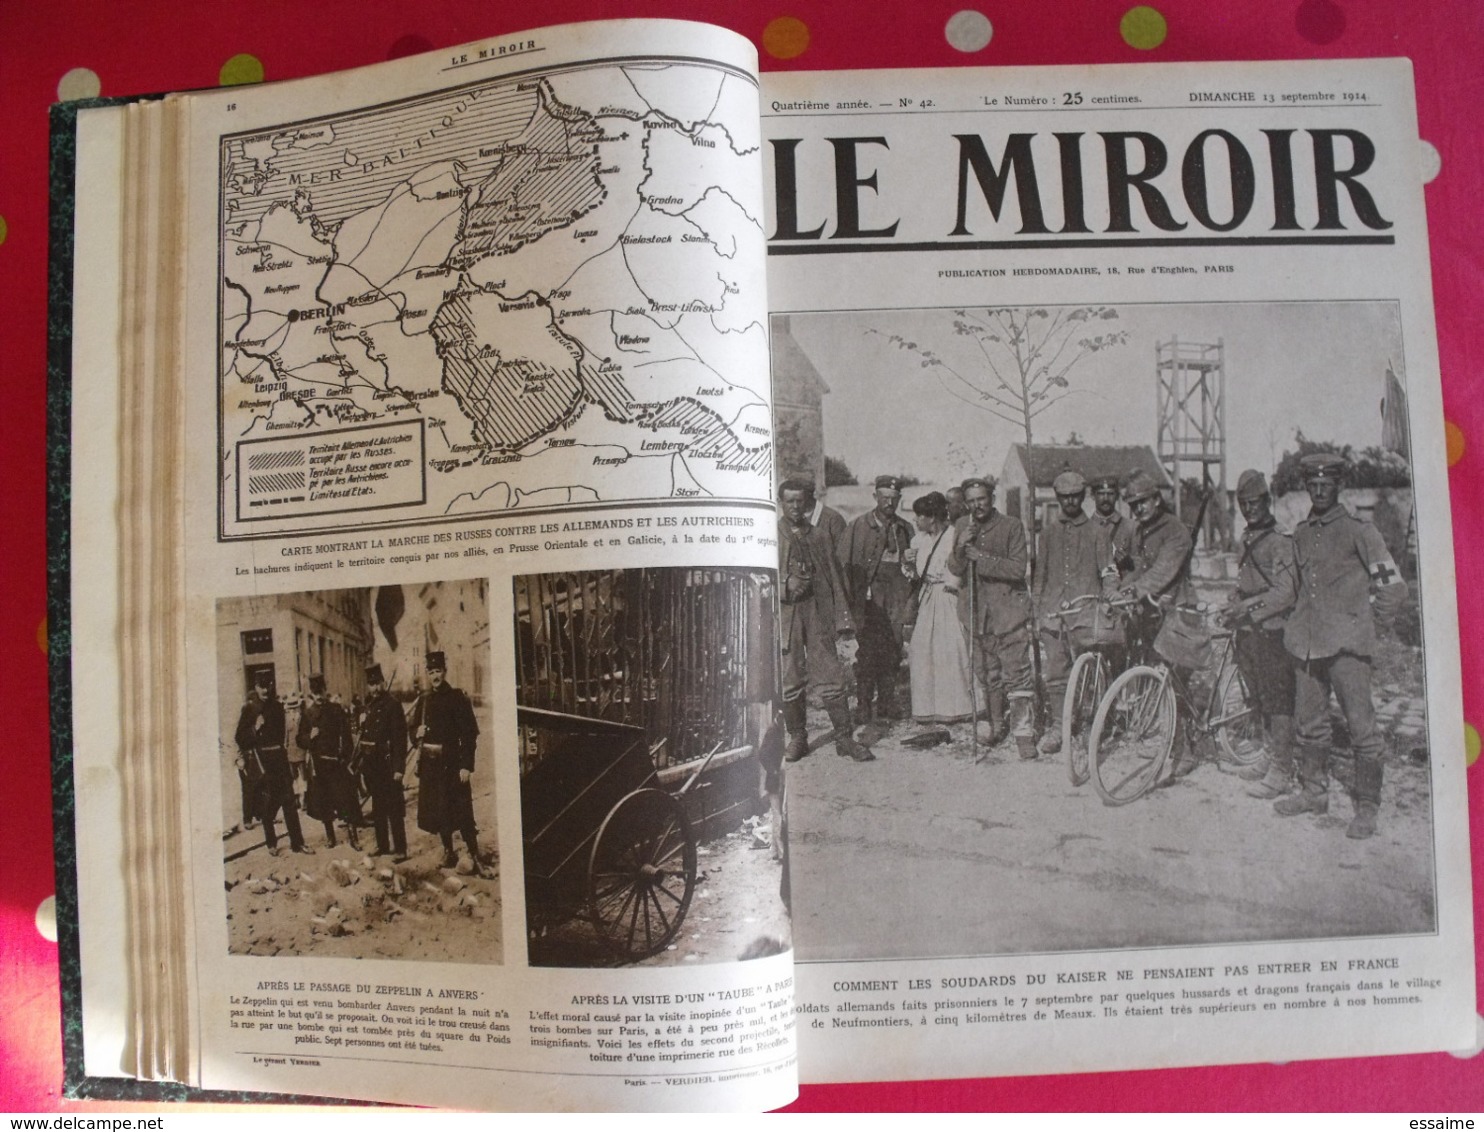 Le miroir. 1914/15. 73 numéros. l'actualité de l'époque très illustrée au début de la guerre. recueil, reliure.